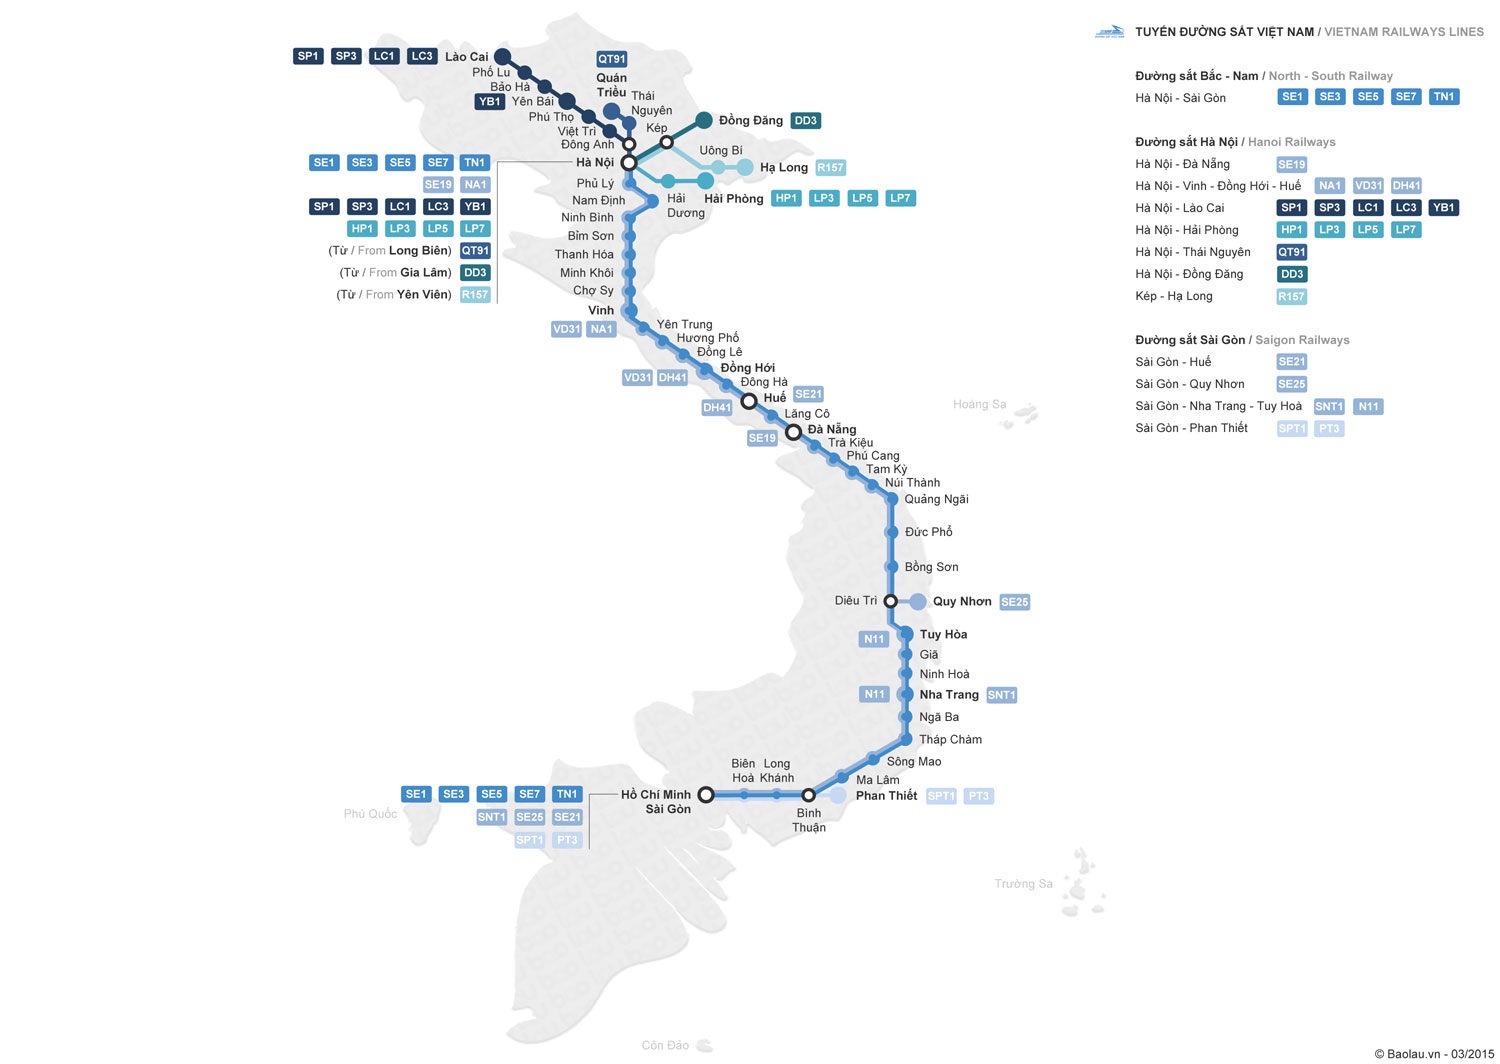 Direct Analytisch kalf Train travel in Vietnam | Schedules & online tickets